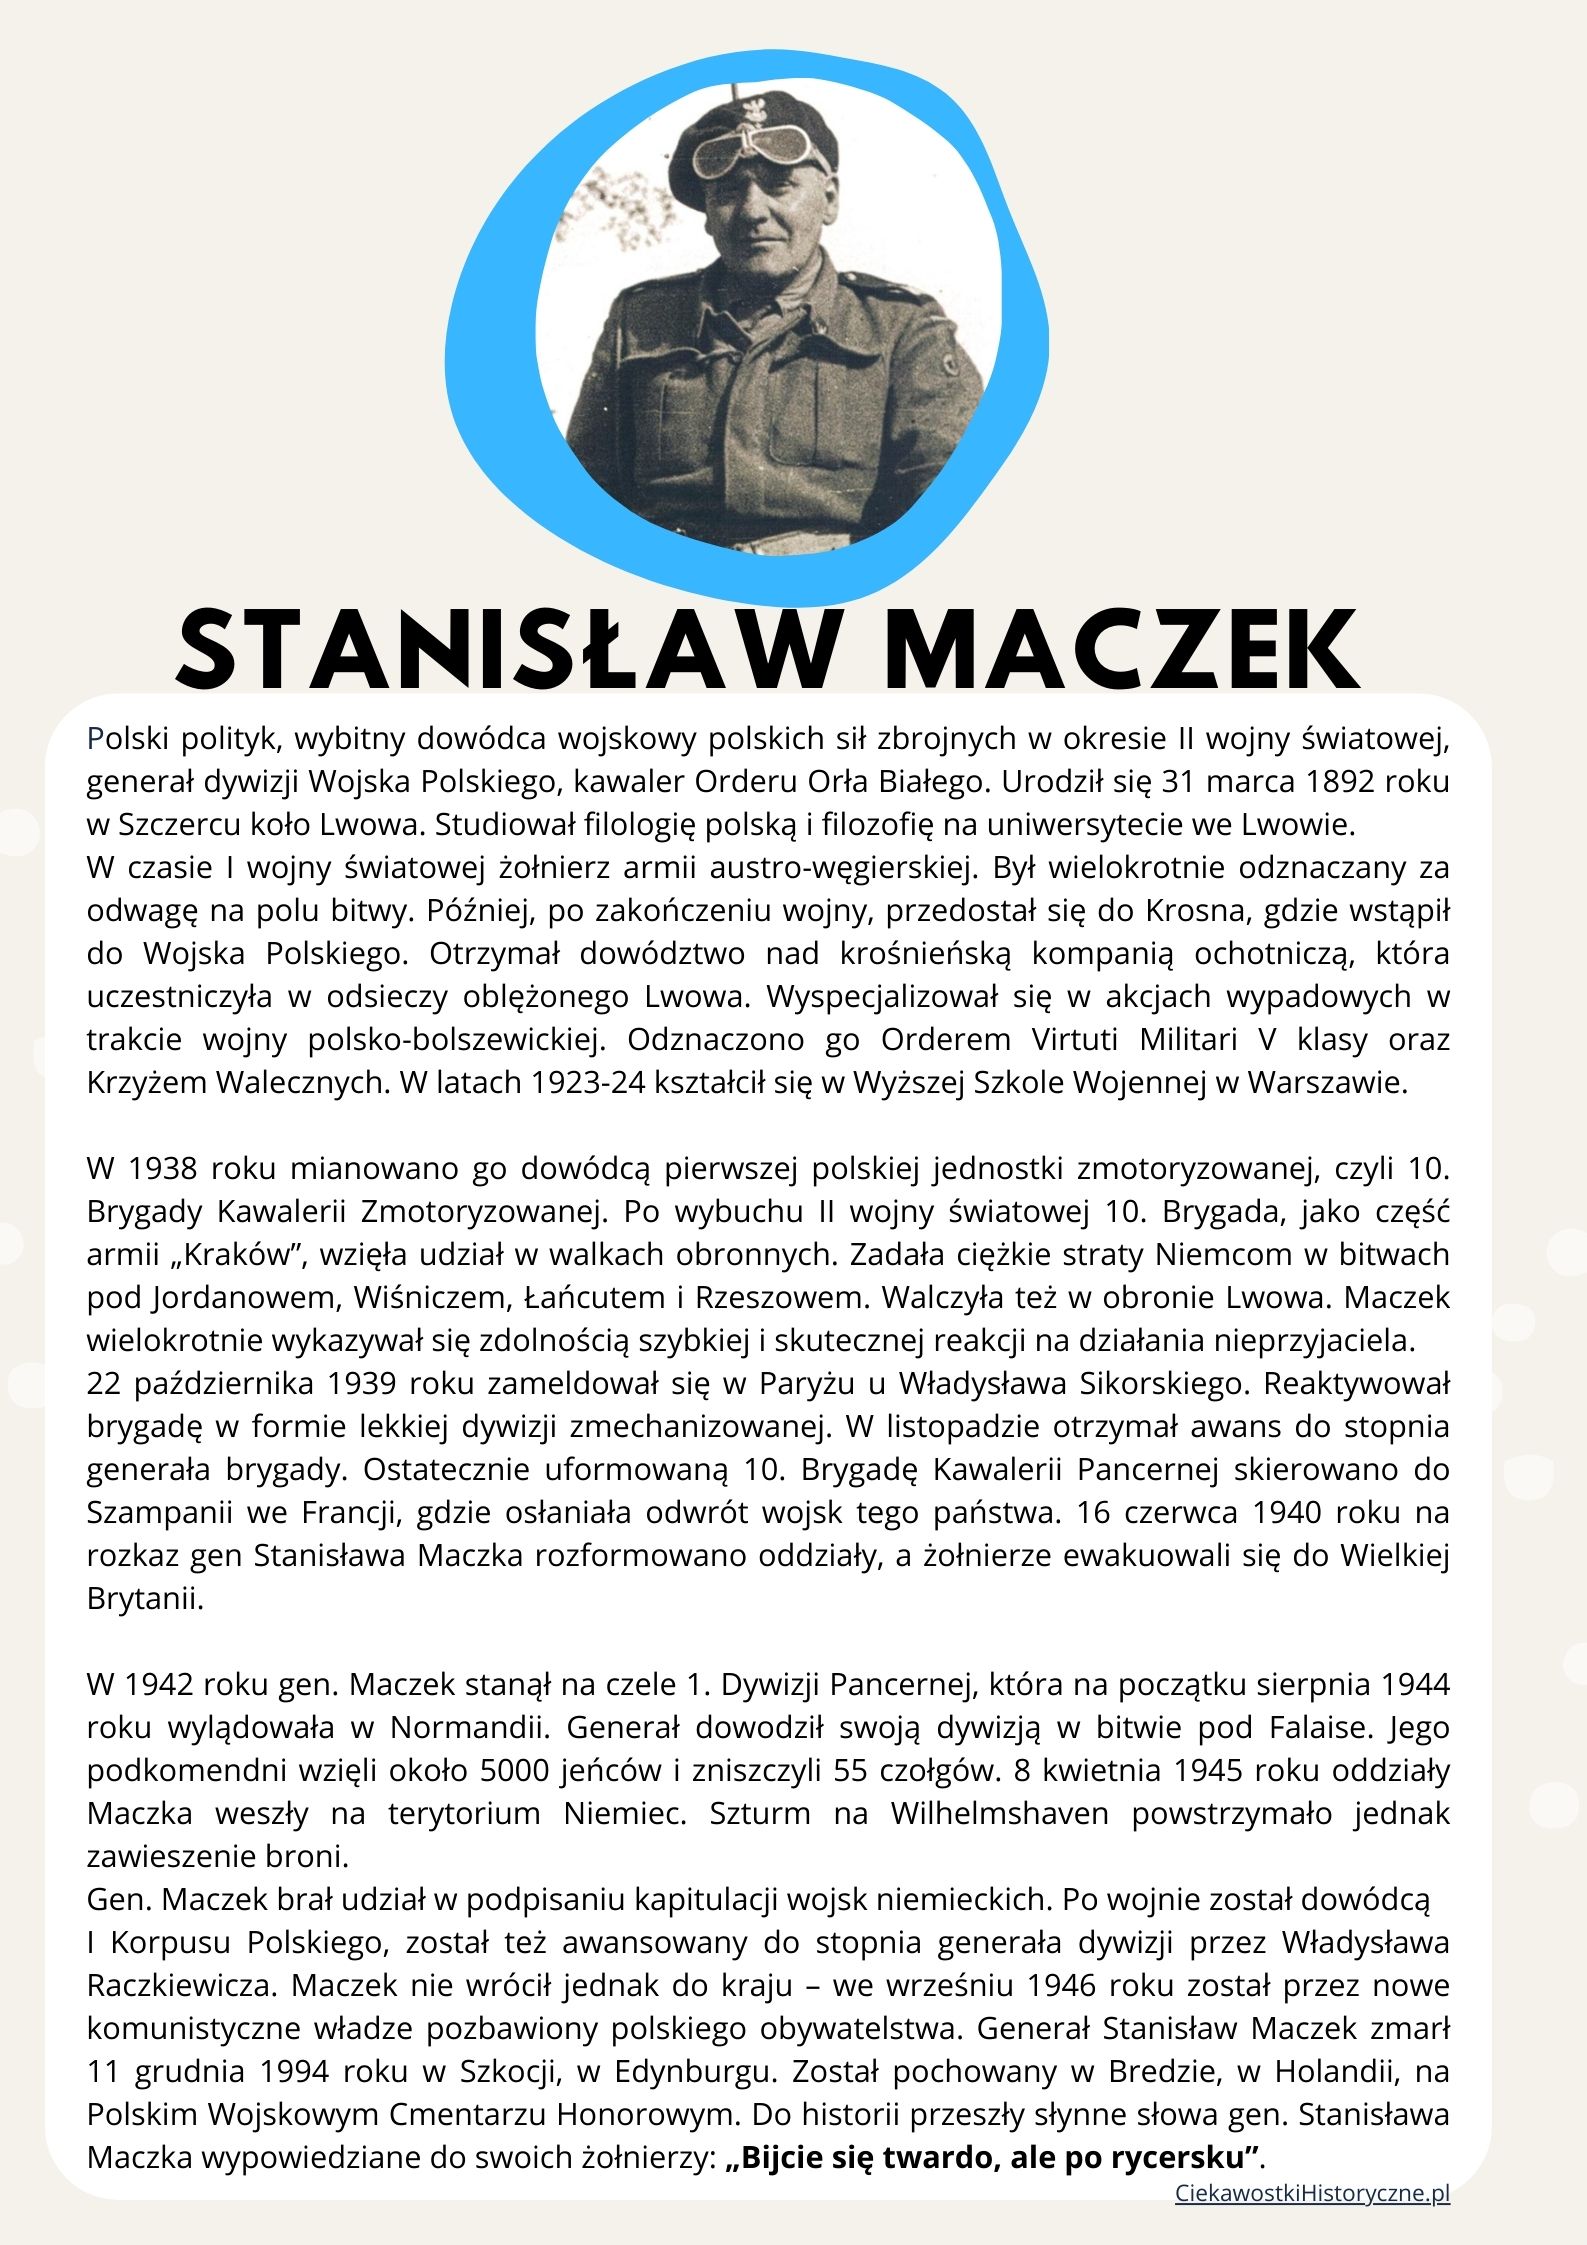 Stanisław Maczek - opis